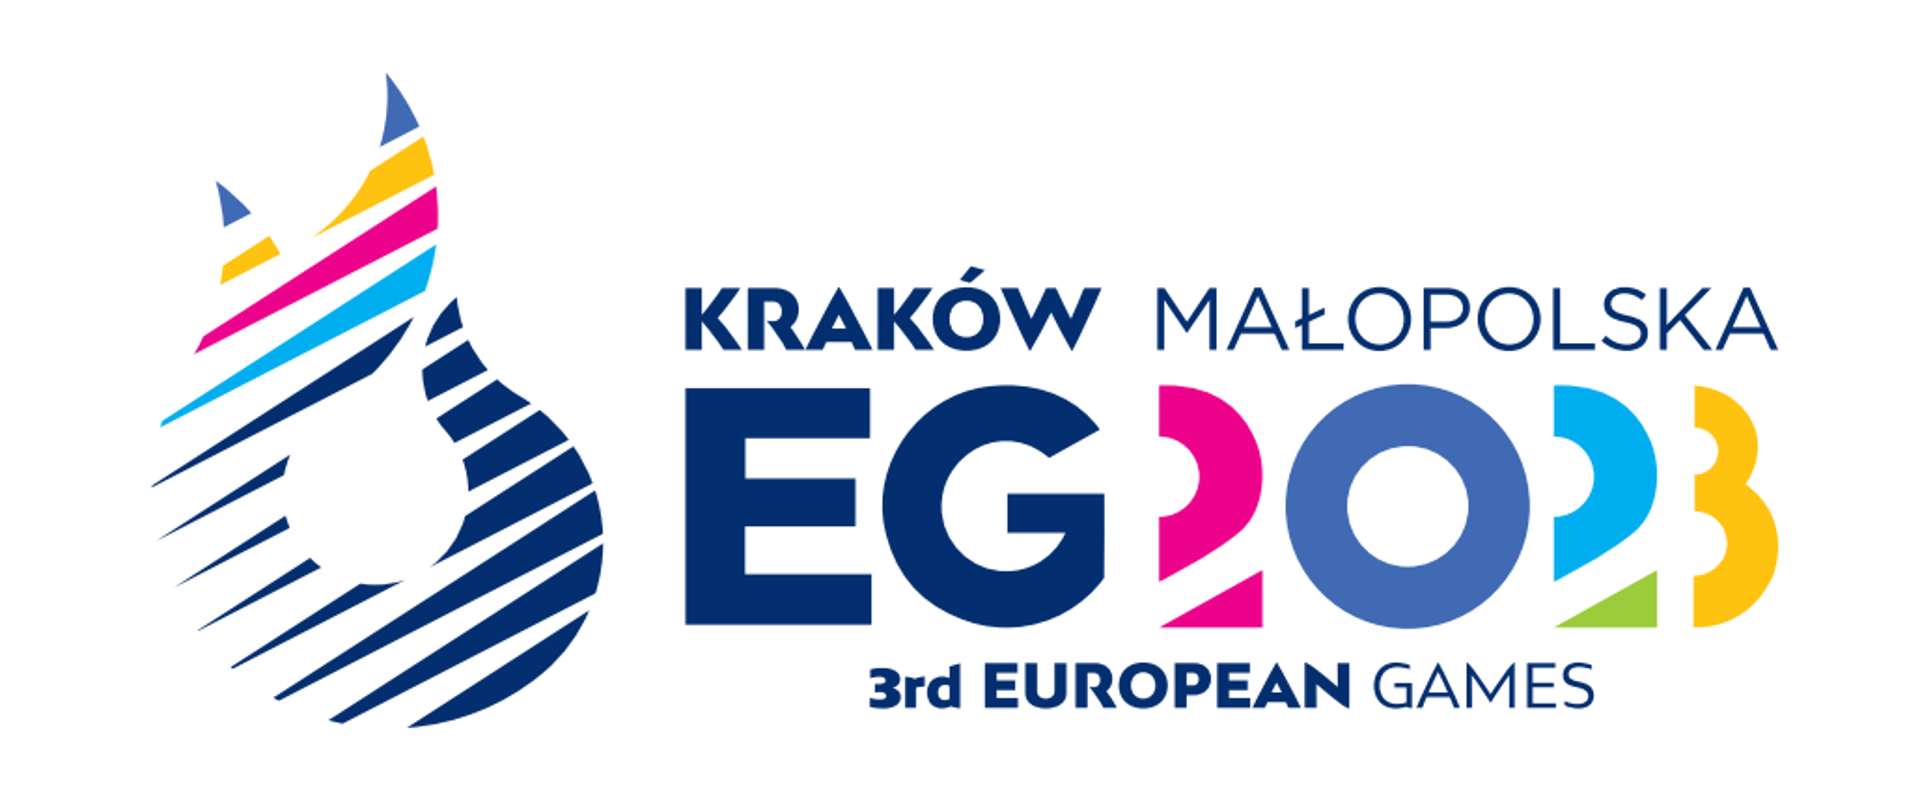 Juegos Europeos Cracovia-Malopolska 2023